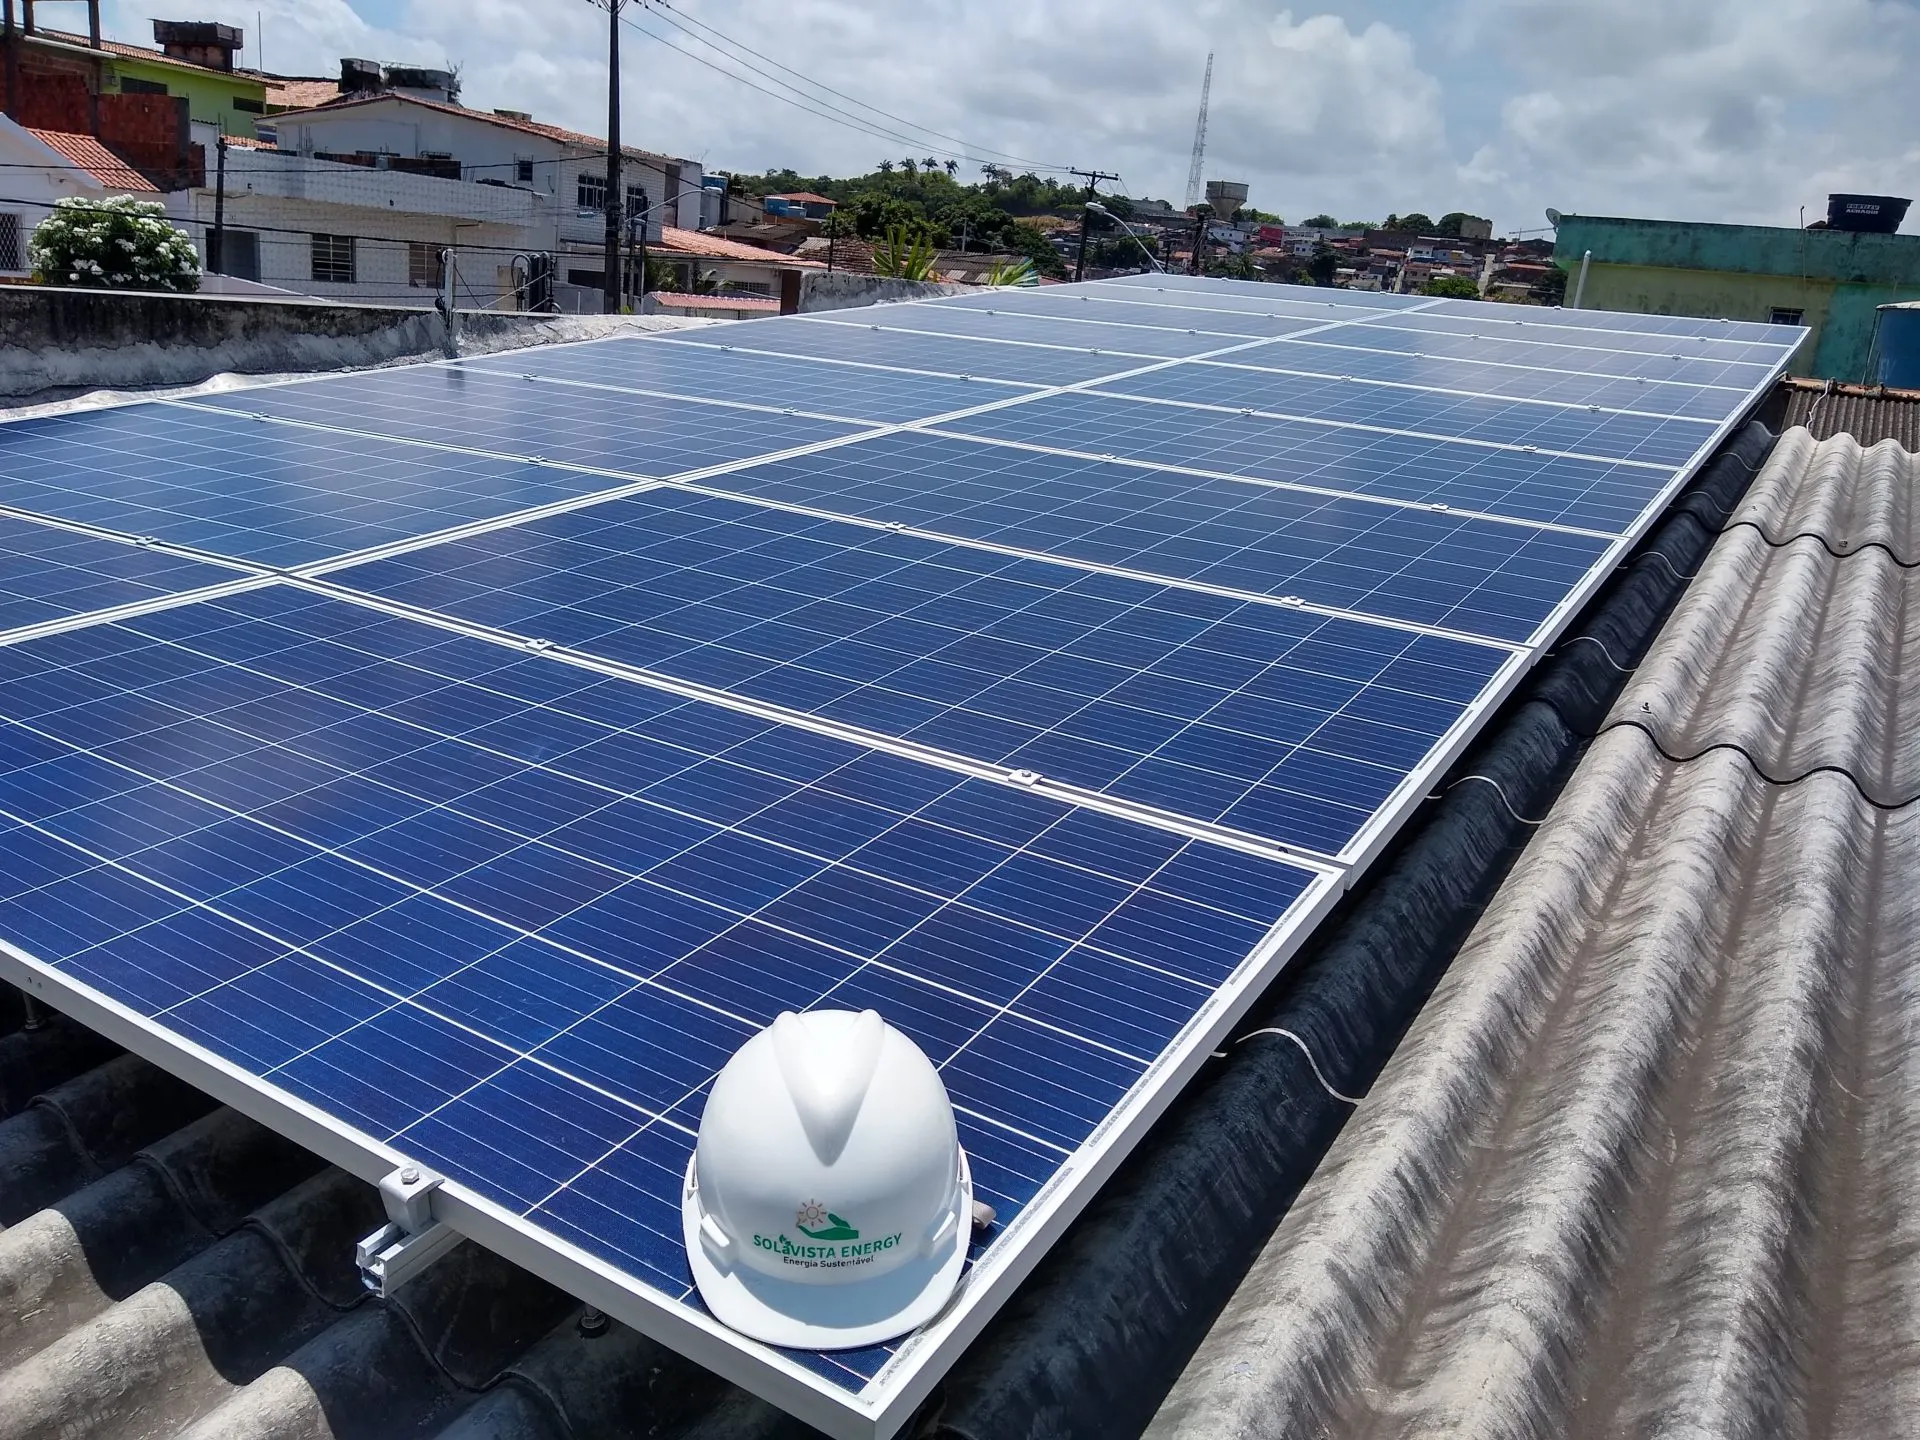 Sistema instalado no bairro Cajueiro, Recife-PE. Composto por 18 módulos Solar Fotovoltaico de potência 330W e 05 Micro inversor APSystems-QS1. Com plataforma para monitoramento Online nivel módulo a módulo.